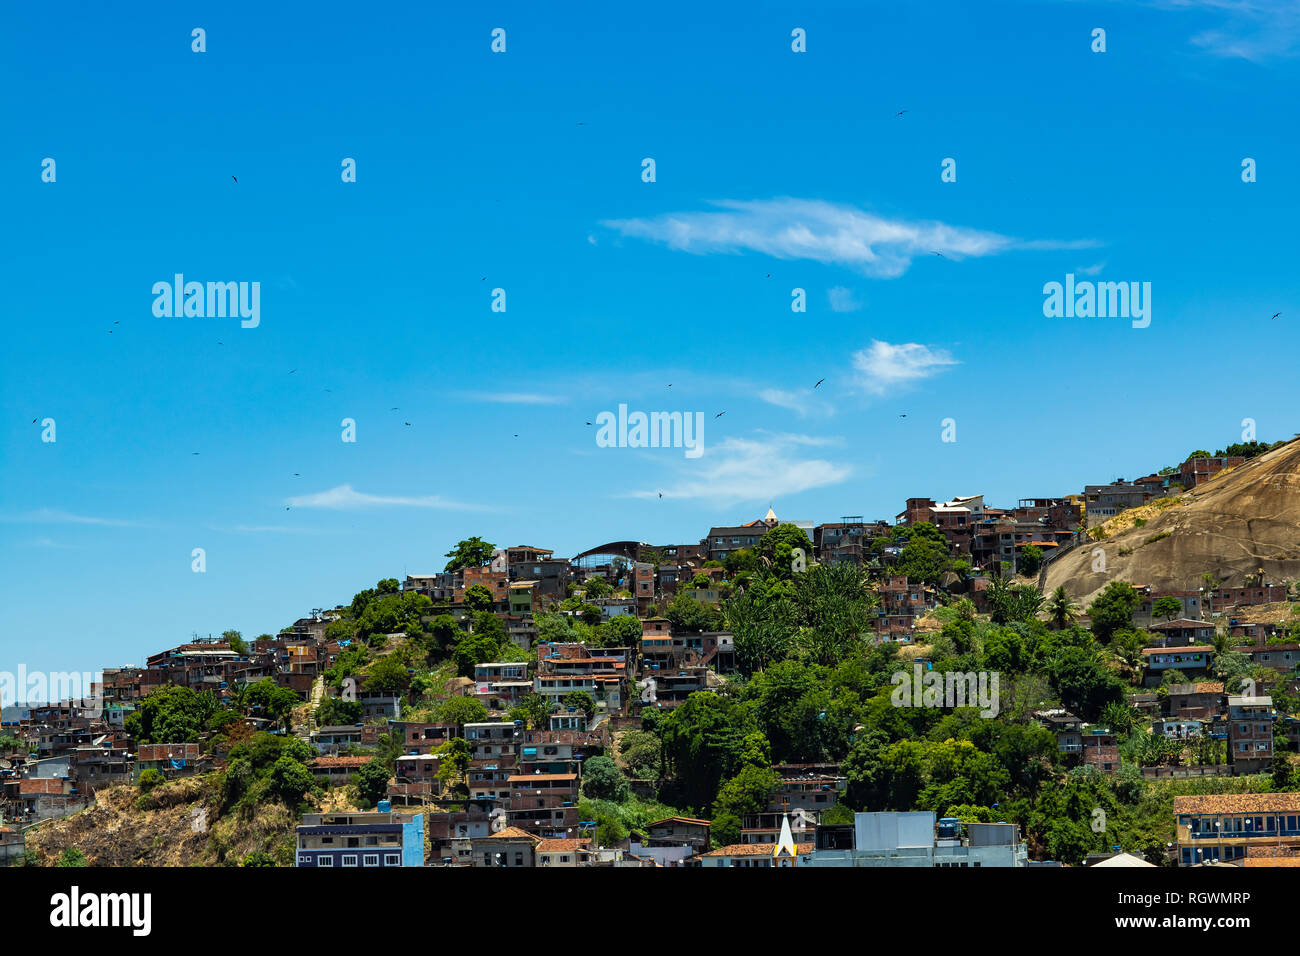 Slums der Welt. Favelas von Brasilien. Slum in der Stadt Niteroi, Penha Hill Slum. Stockfoto